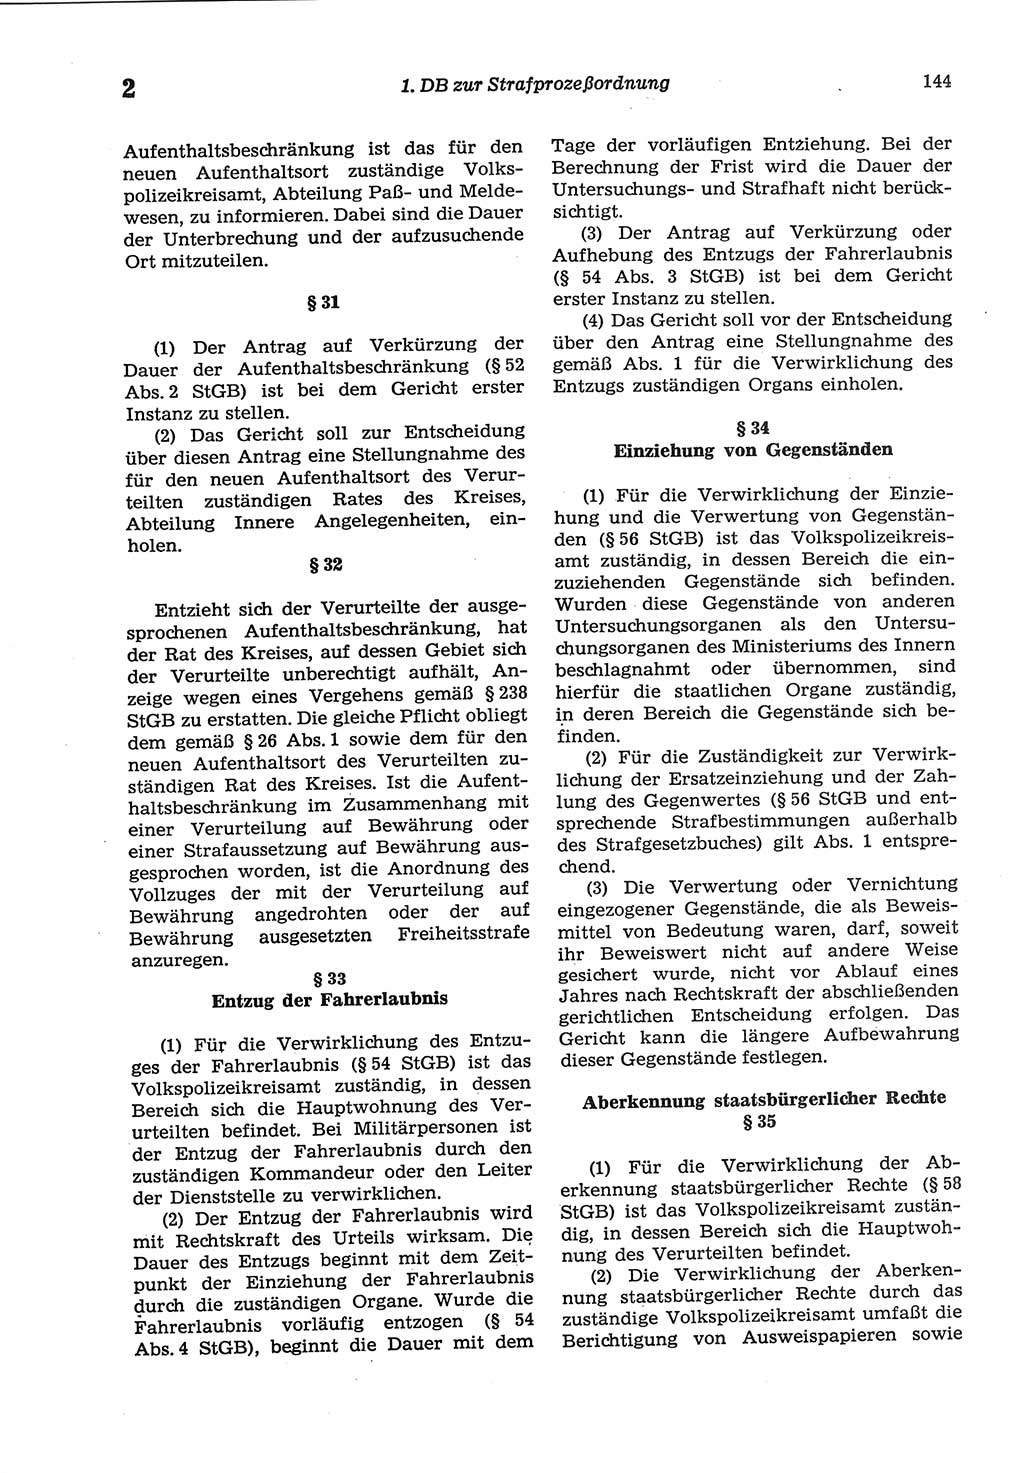 Strafprozeßordnung (StPO) der Deutschen Demokratischen Republik (DDR) sowie angrenzende Gesetze und Bestimmungen 1977, Seite 144 (StPO DDR Ges. Best. 1977, S. 144)